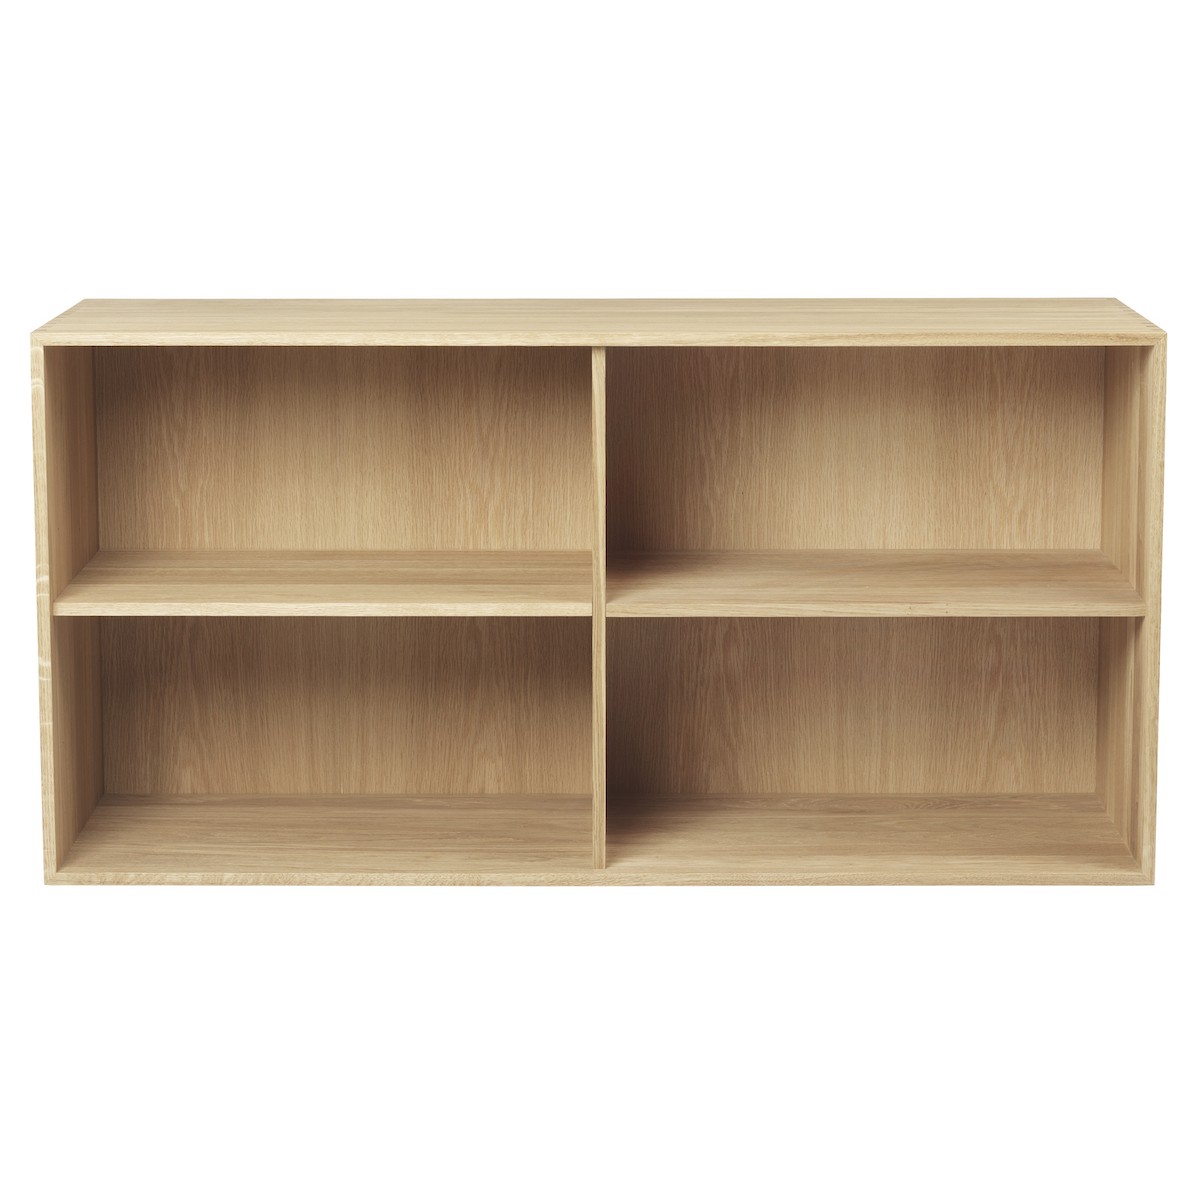 56 x 112 x 36 cm + 2 shelves (FK632110 + 2 FK633021)